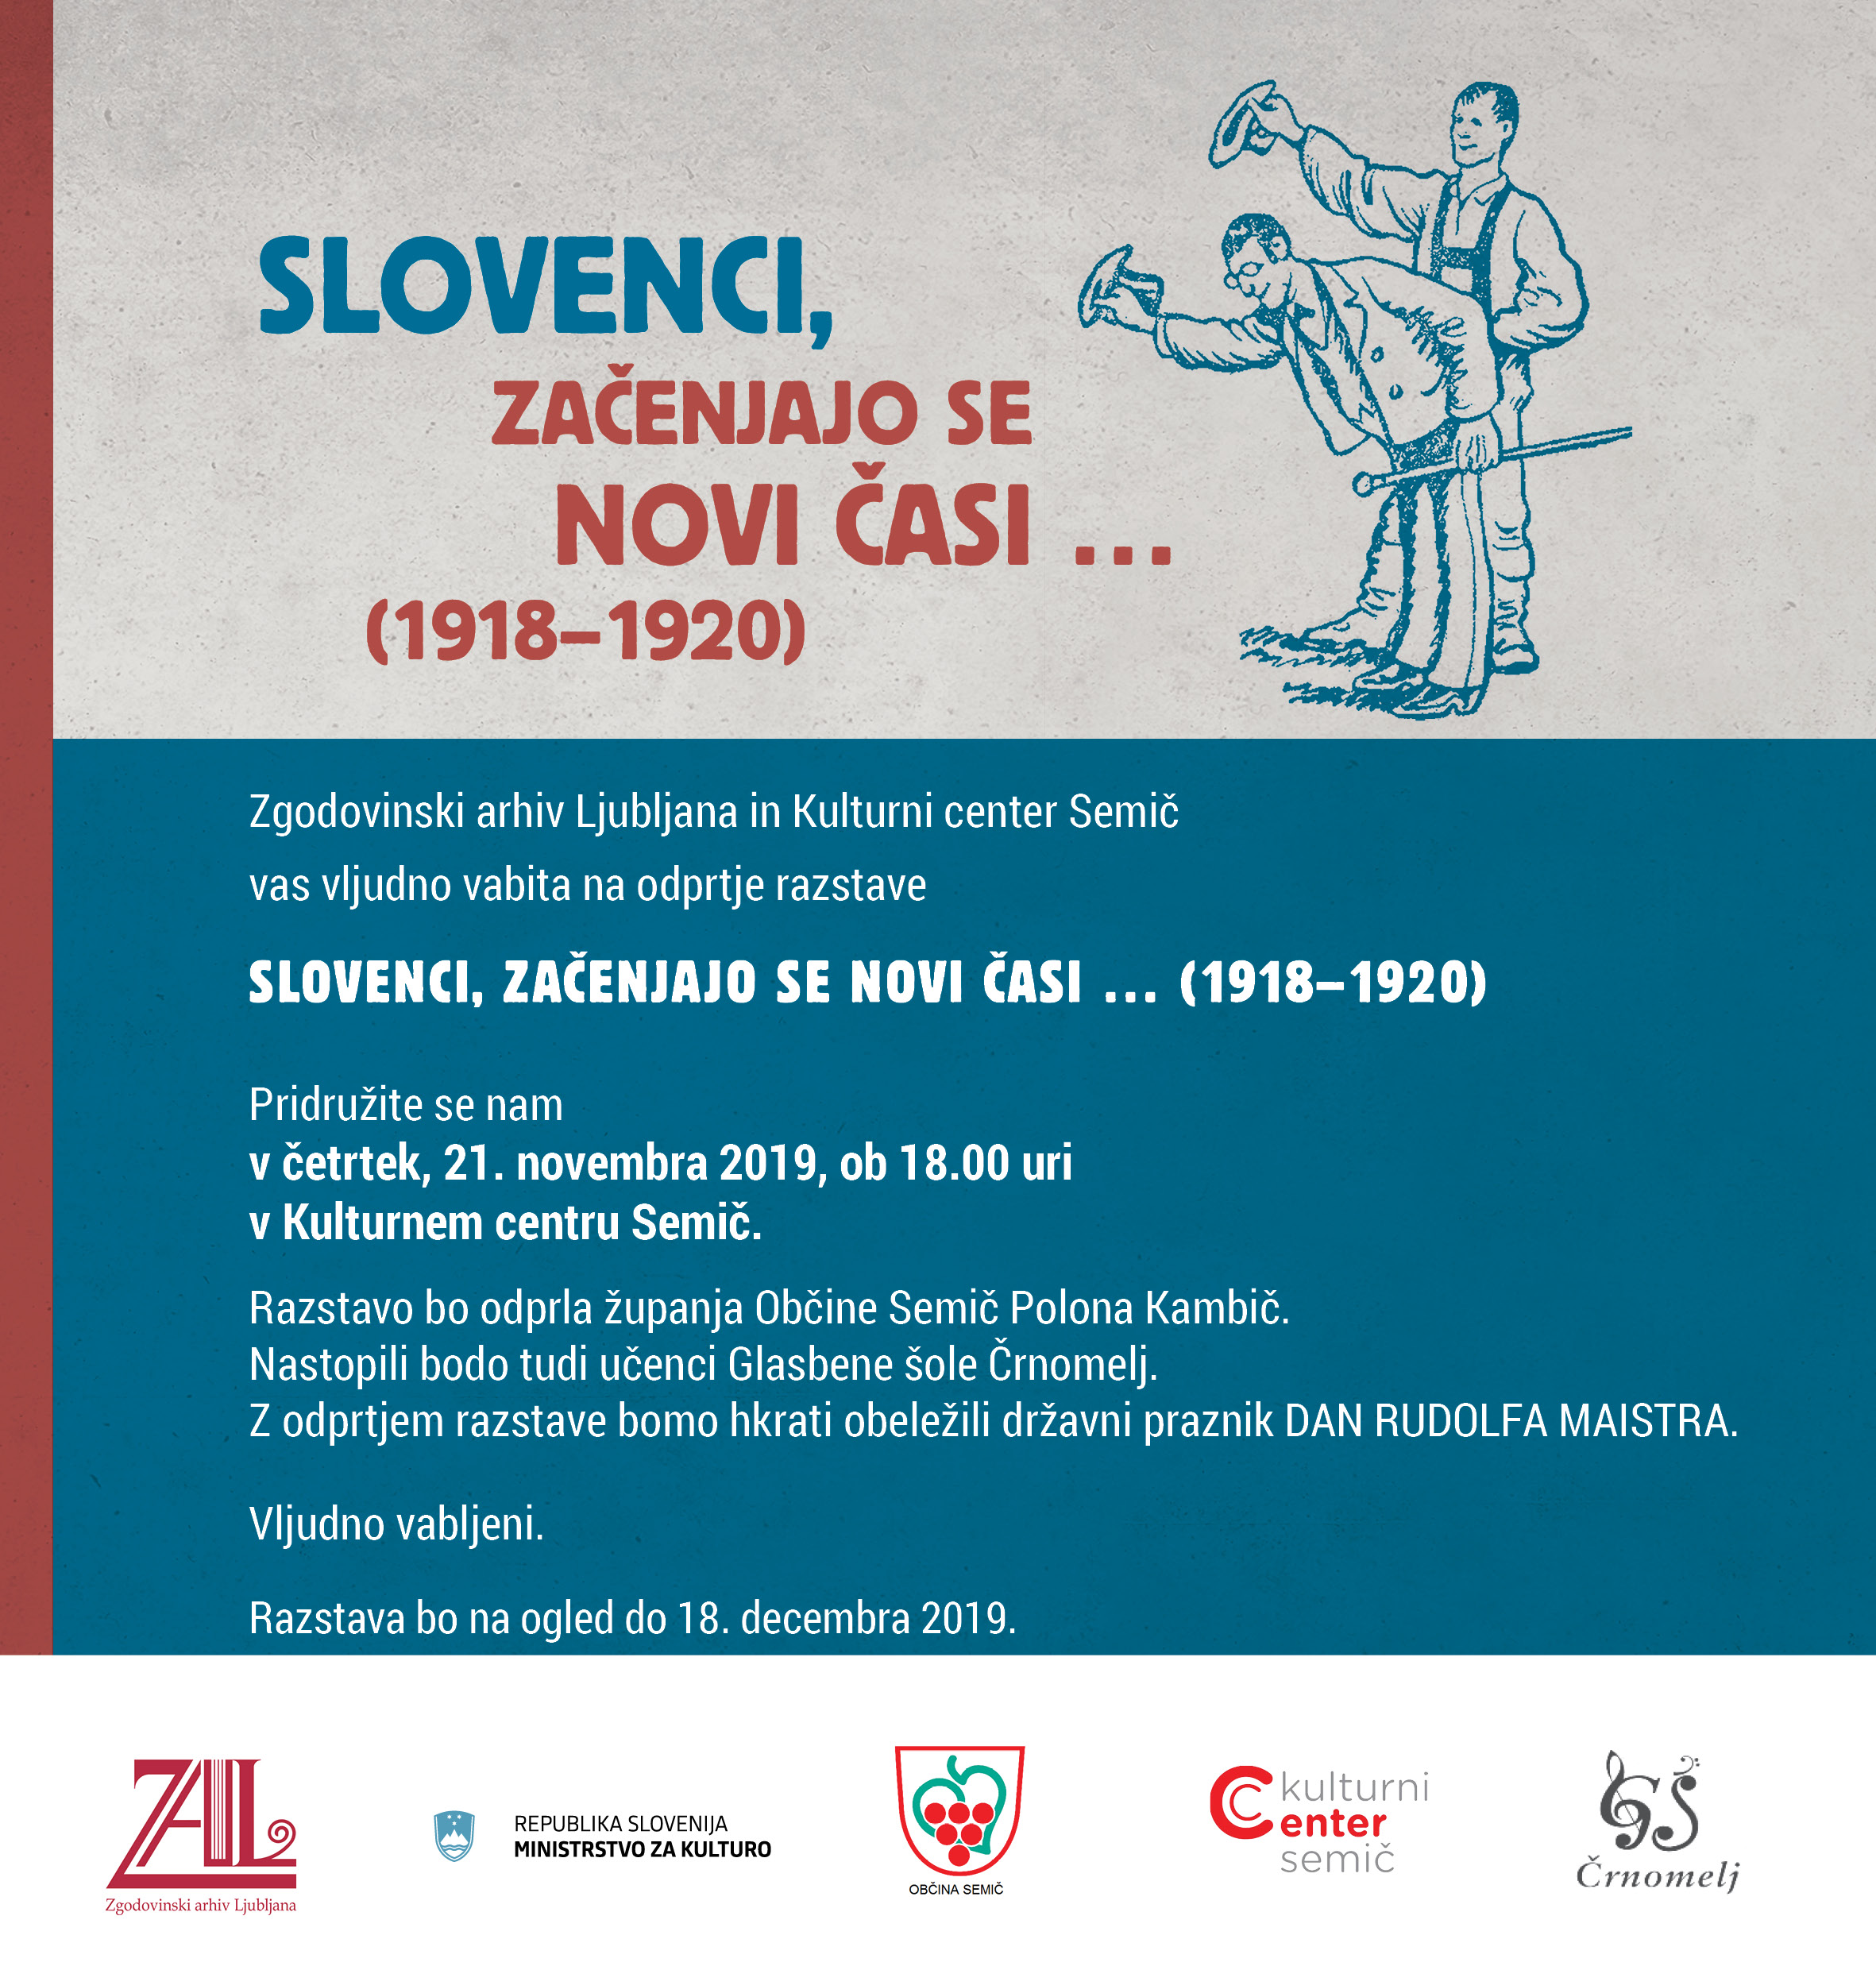 Zgodovinski arhiv Ljubljana in Kulturni center Semič vas vljudno vabita na odprtje razstave Slovenci, začenjajo se novi časi... (1918-1920). Pridružite se nam v četrtek, 21. novembra 2019, ob 18.00 uri v Kulturnem centru Semič.